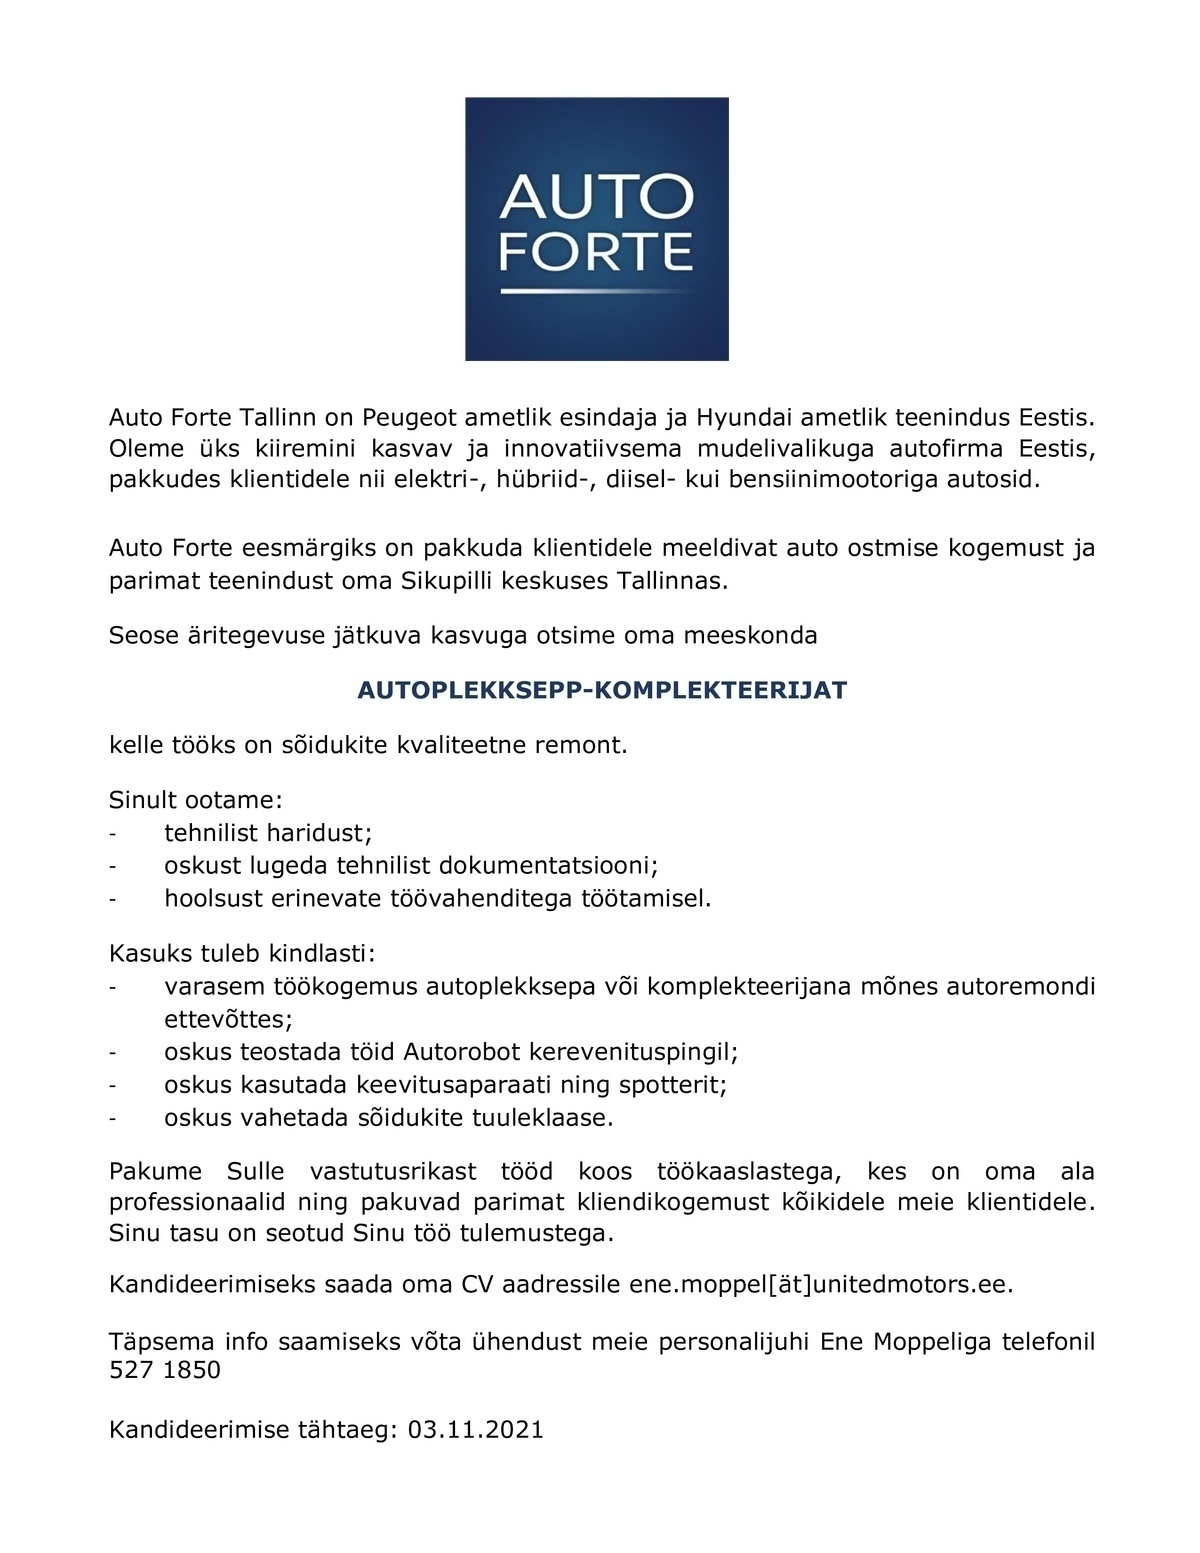 Auto Forte Tallinn OÜ Autoplekksepp